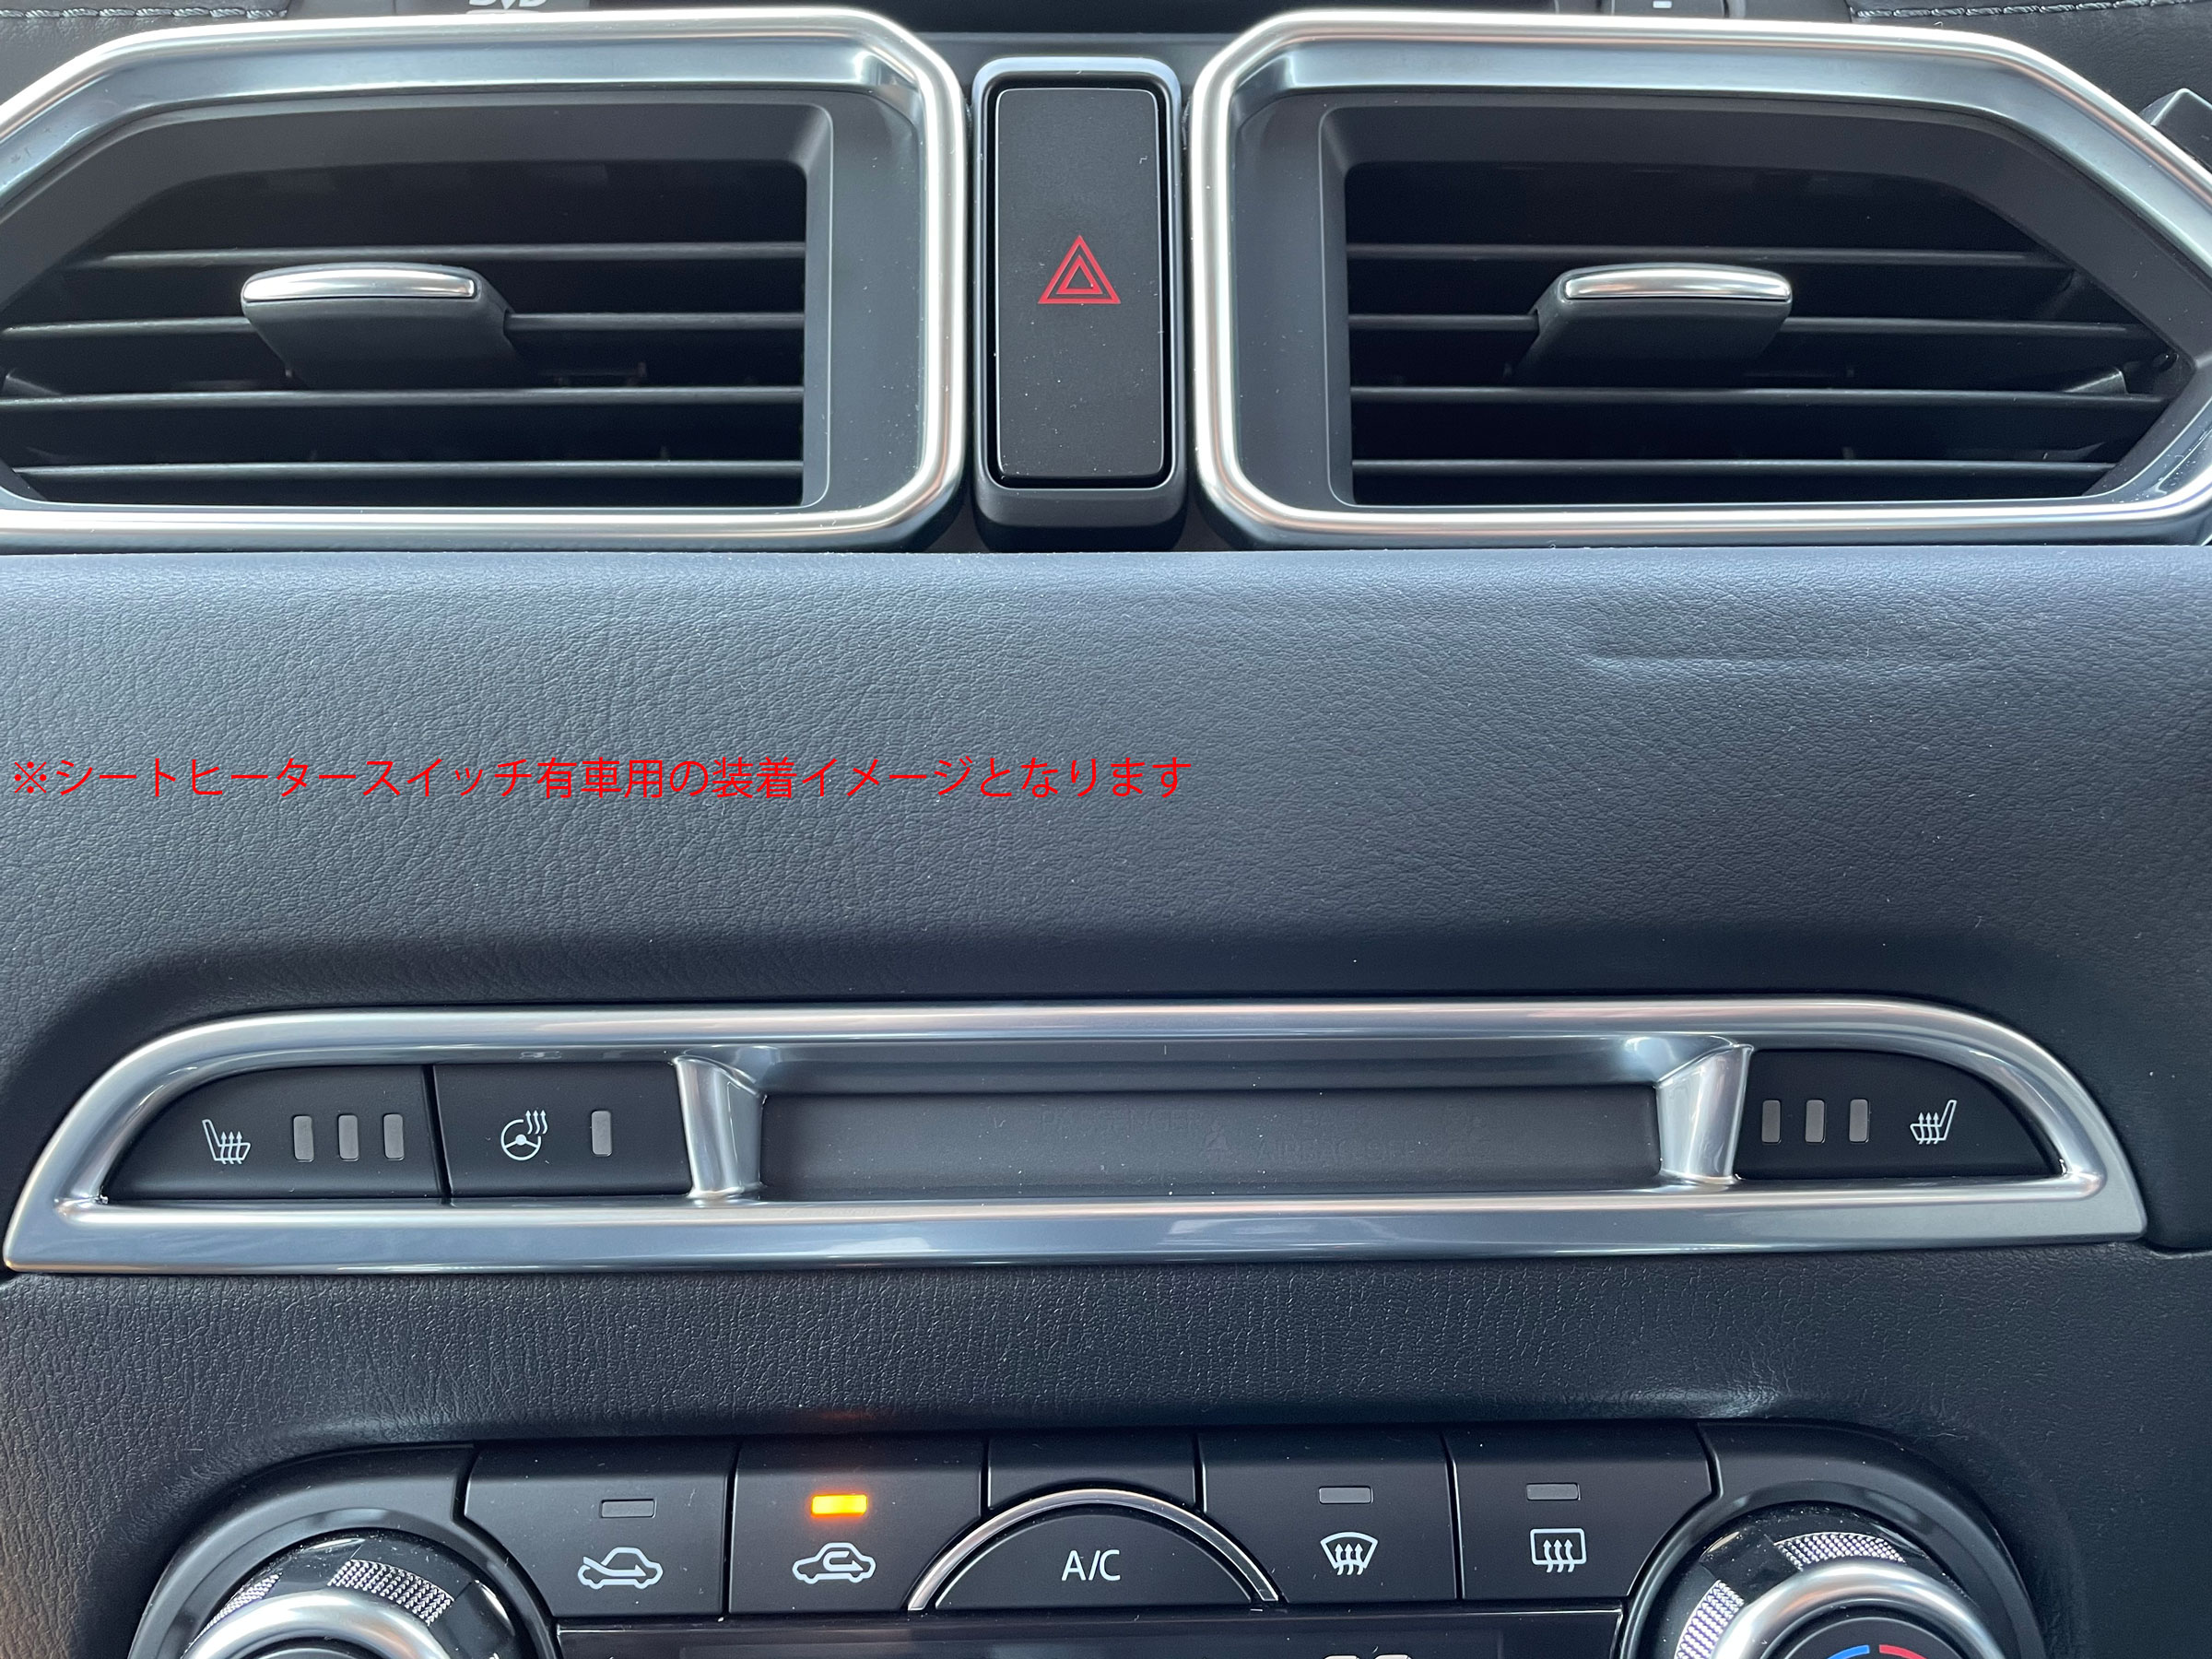 マツダ CX-8 KG 系 ( シート ヒーター 無車用 ) サテンシルバー スイッチ カバー ガーニッシュ インテリア パネル リング フロント